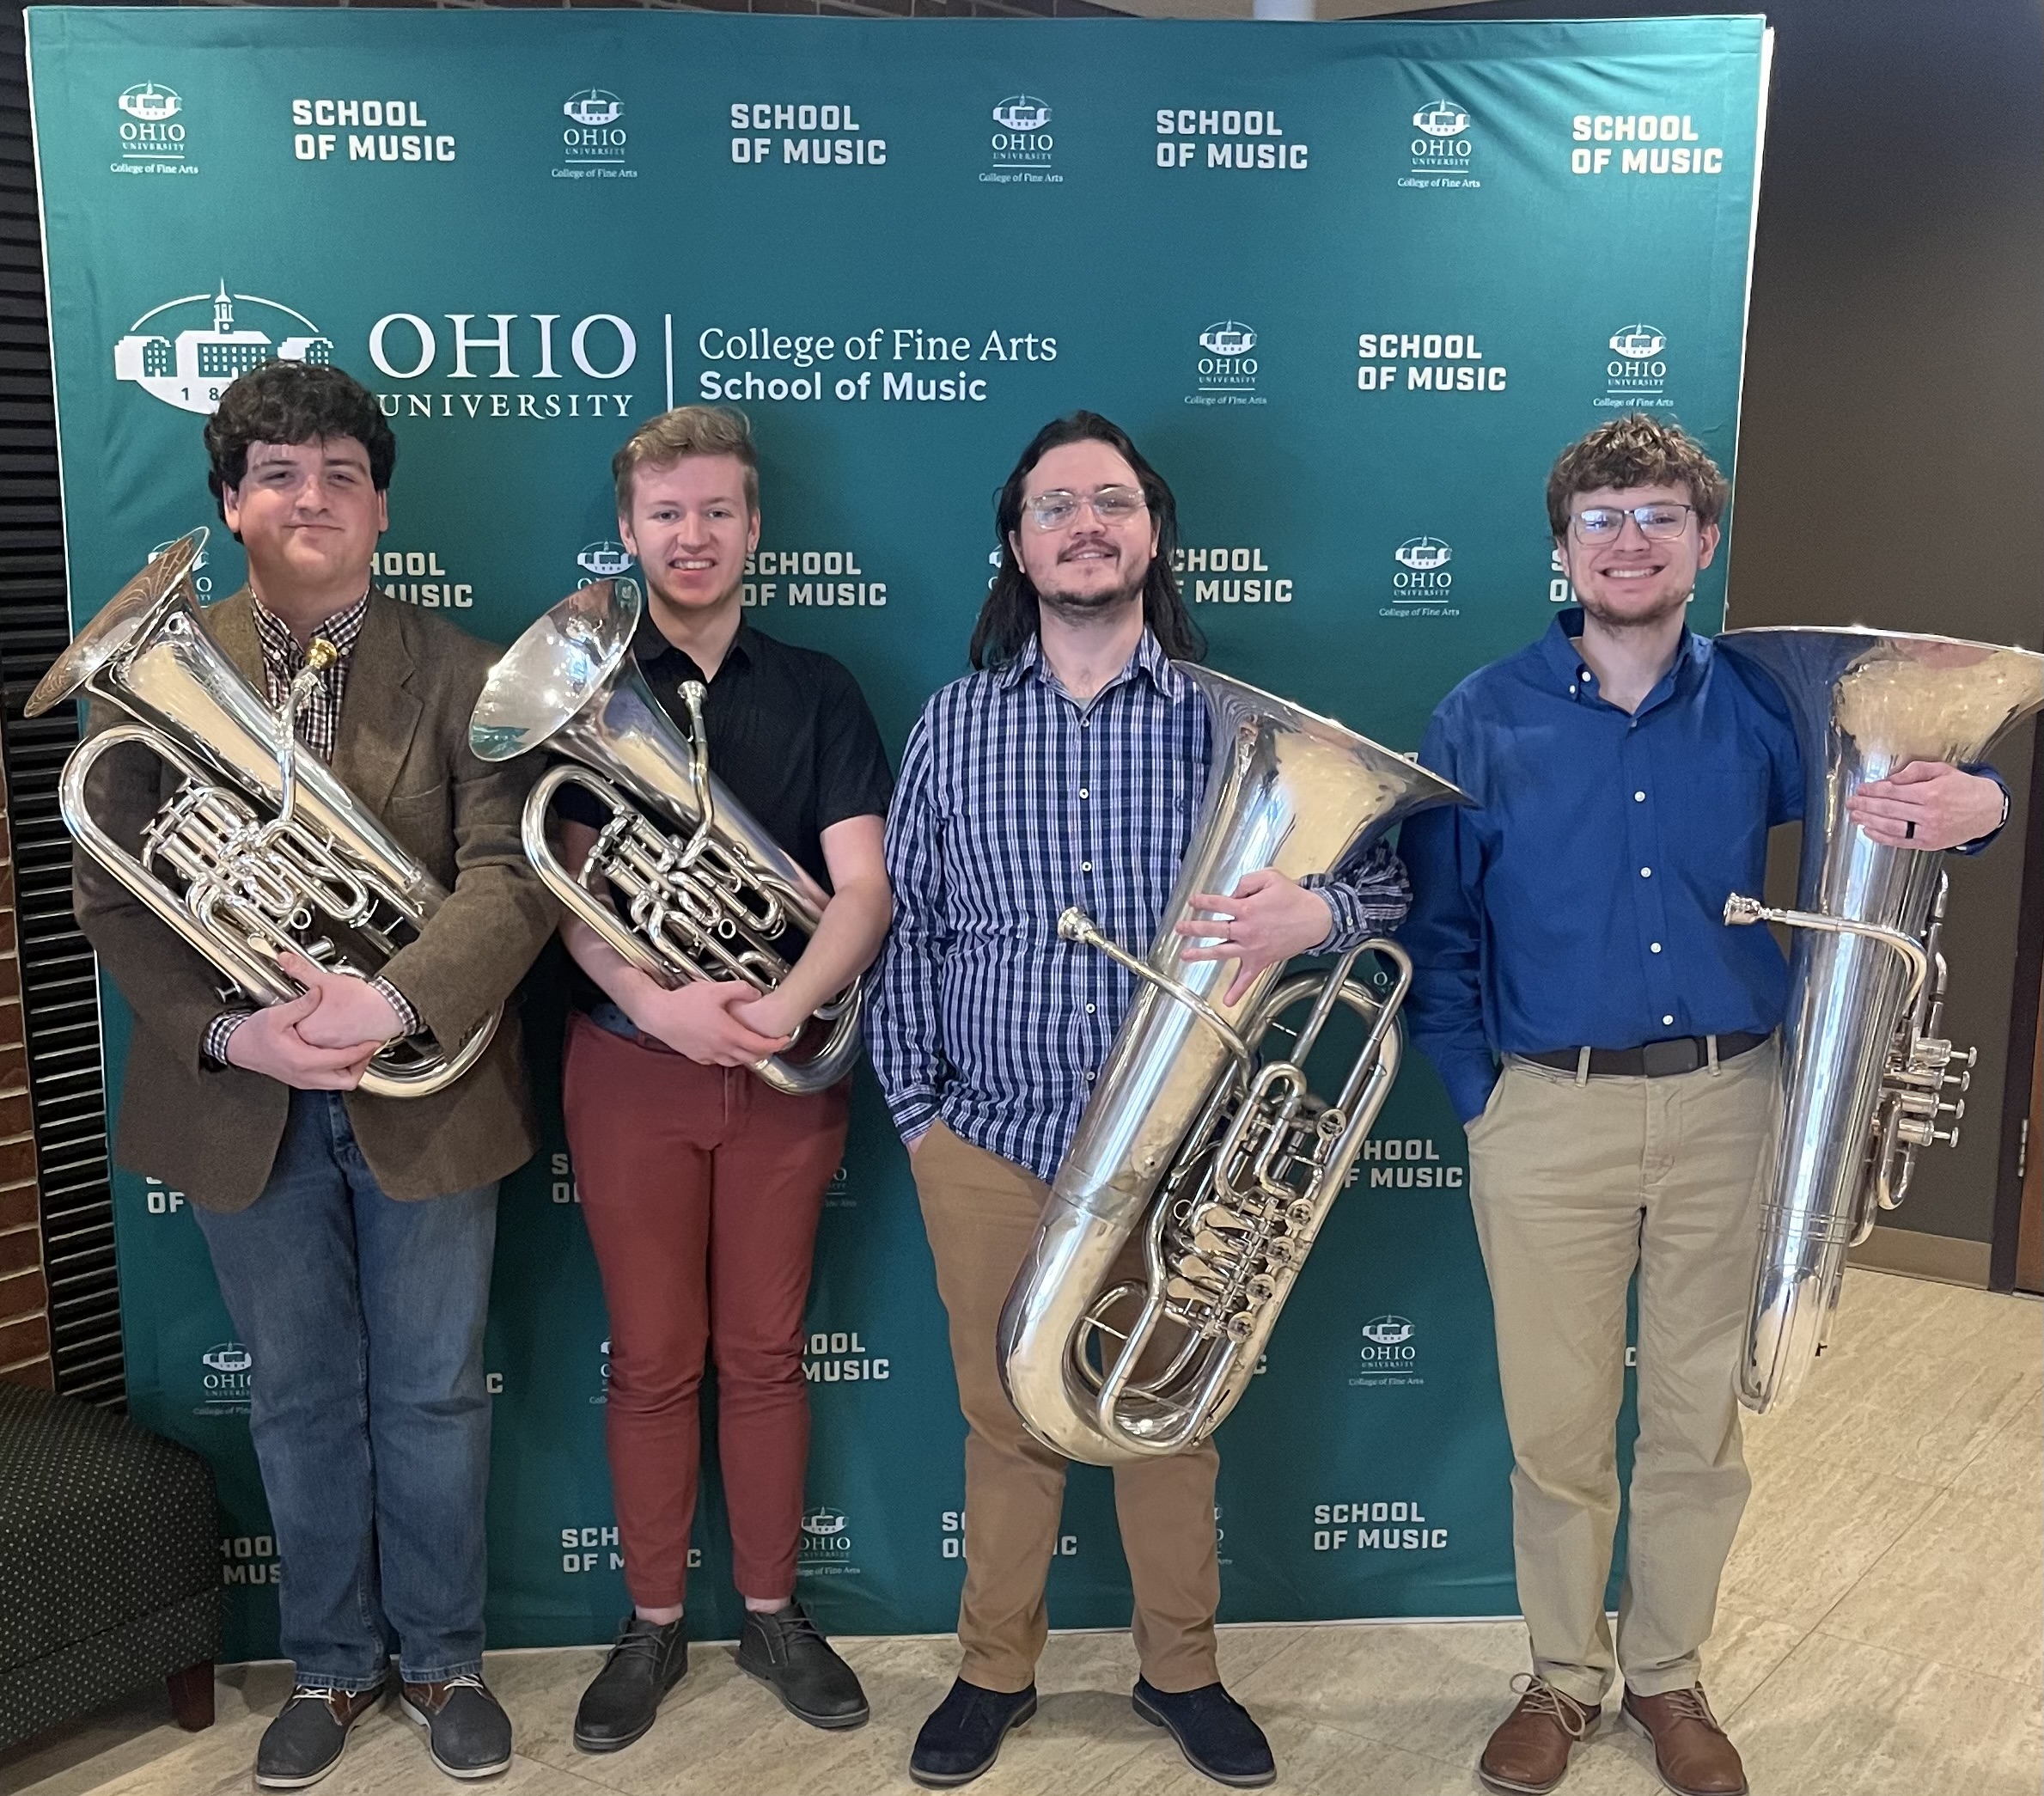 Featured performers, The Ohio University Euphonium and Tuba Quartet